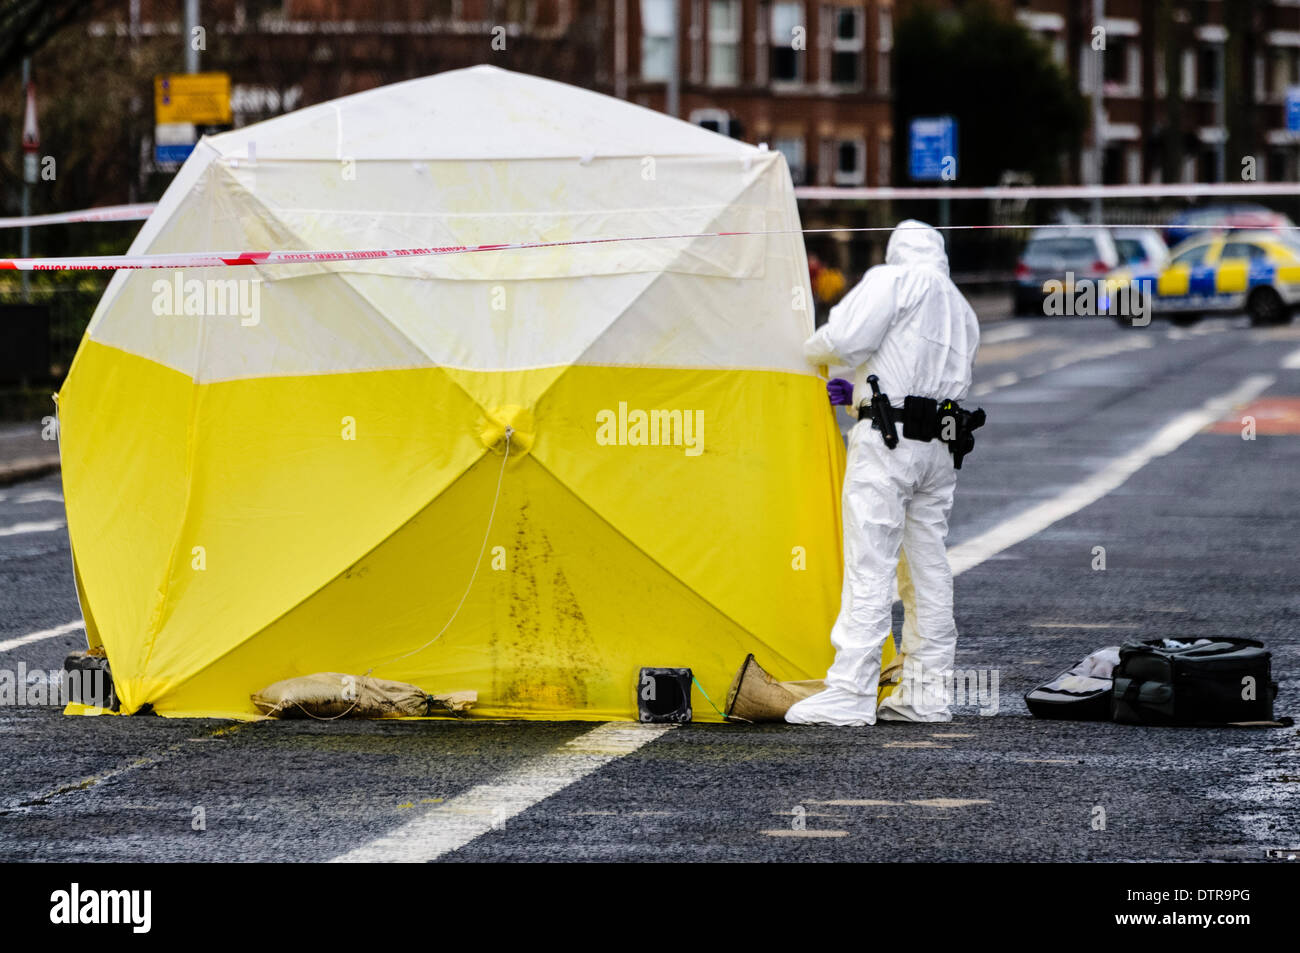 Belfast, Nordirland, 23. Februar 2014 - eine Szene des Verbrechens Offizier trug eine weiße Blaumann sieht eine Prüfung-Zelt an einem Tatort Credit: Stephen Barnes/Alamy Live News Stockfoto